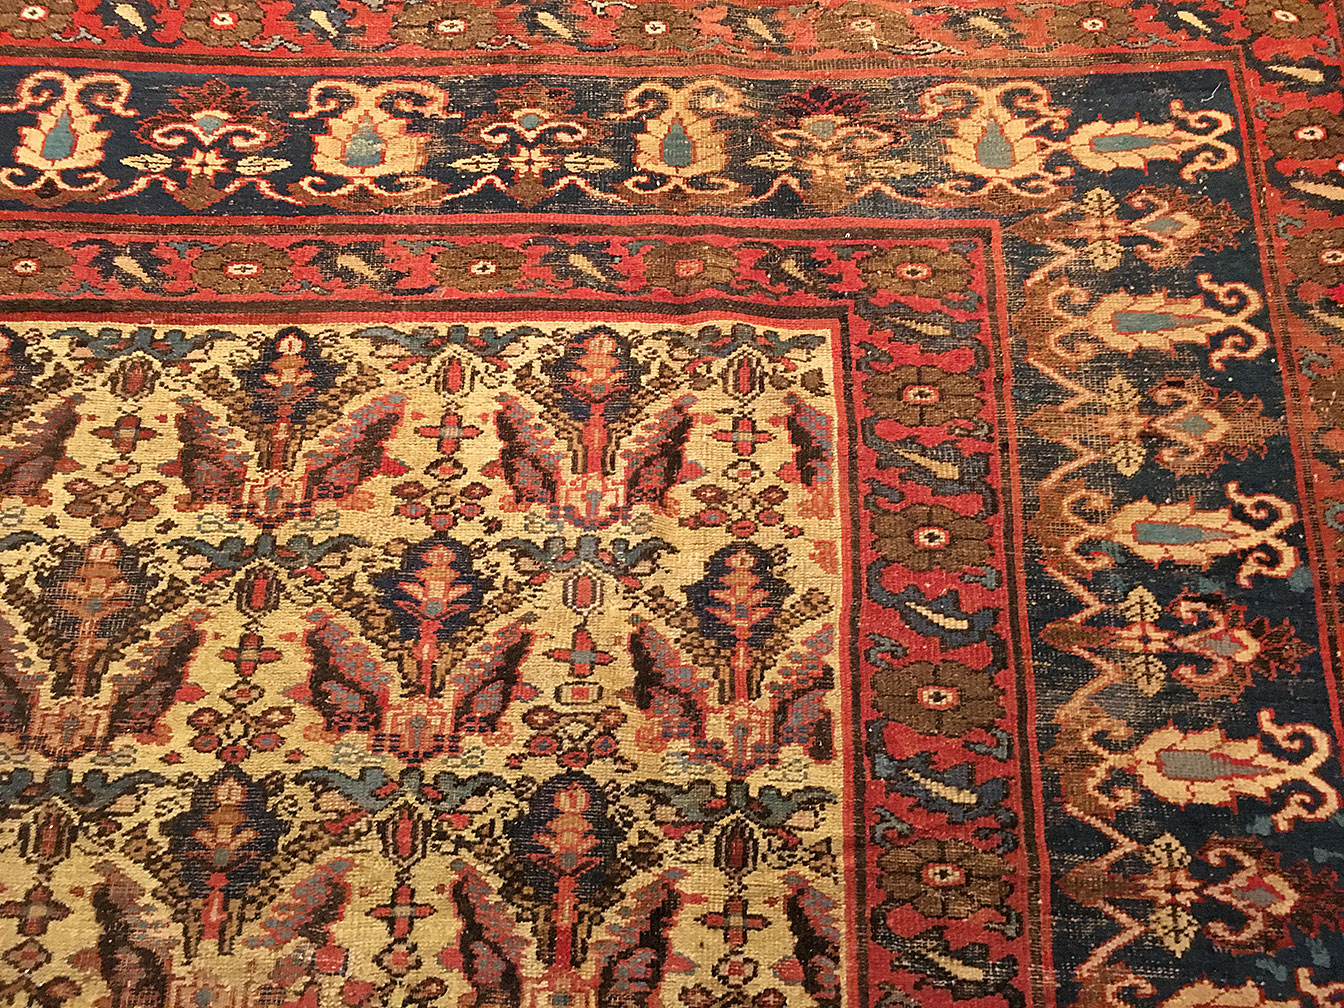 Antique indian Carpet - # 52673